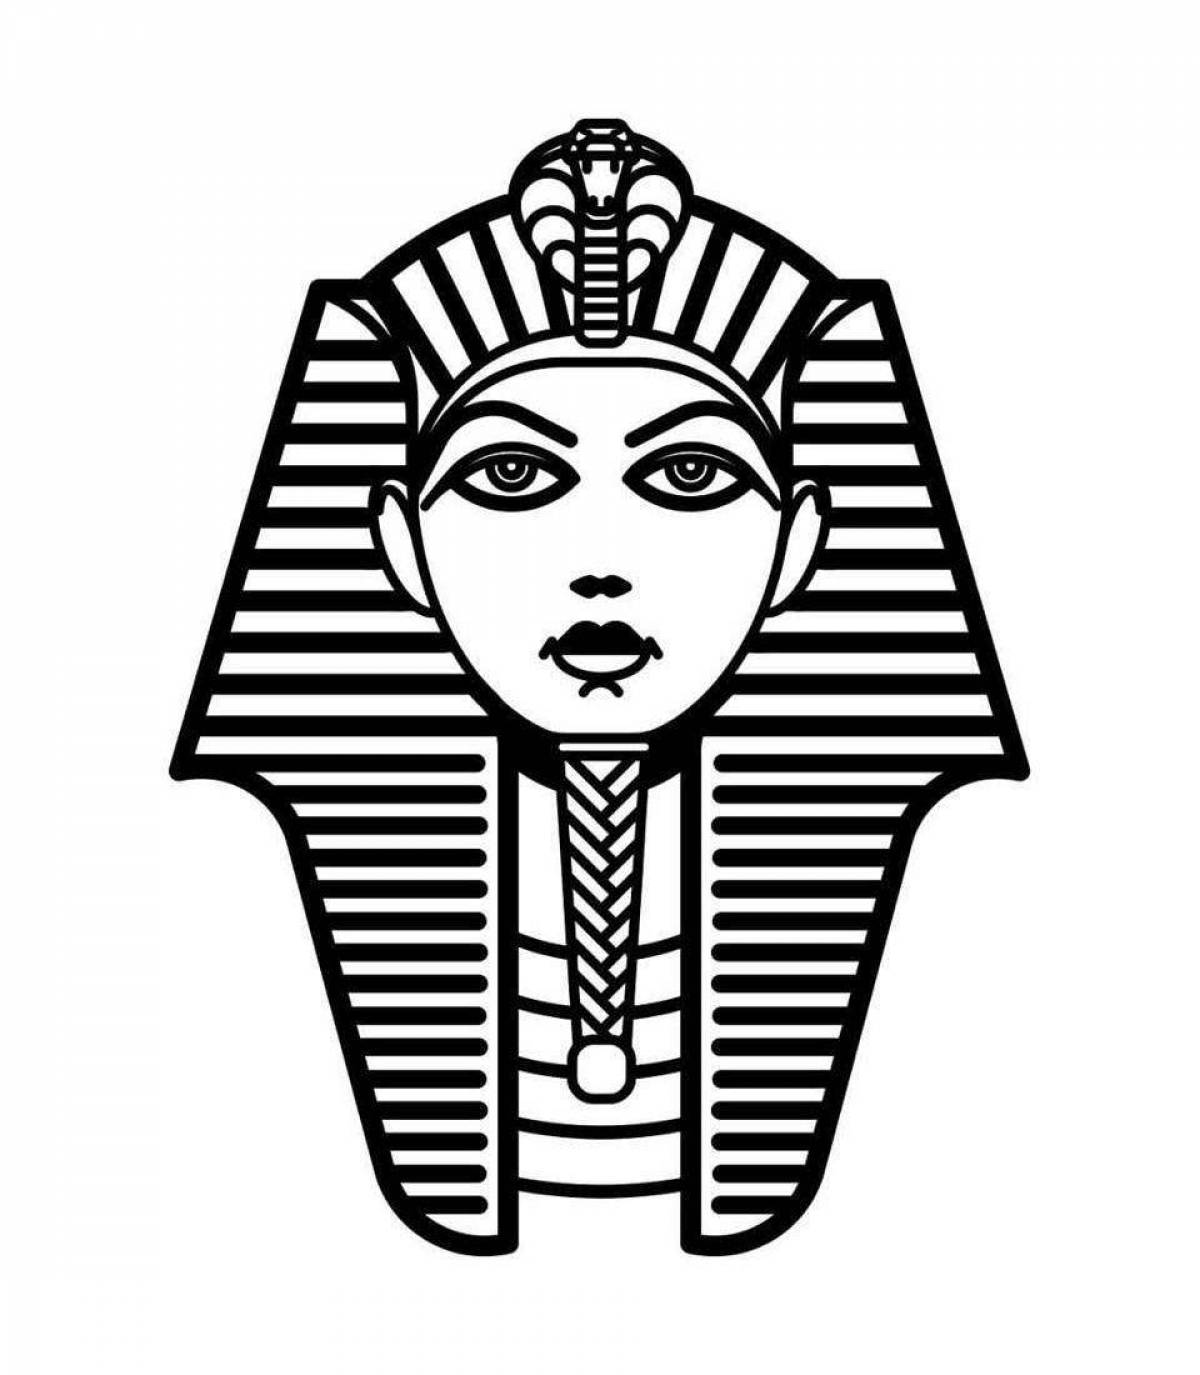 Маска фараона рисунок 5. Маска Тутанхамона для изо. Маска фараона Тутанхамона изо 5. Маска фараона Тутанхамона рисунок. Тату Египет Тутанхамон эскизы.